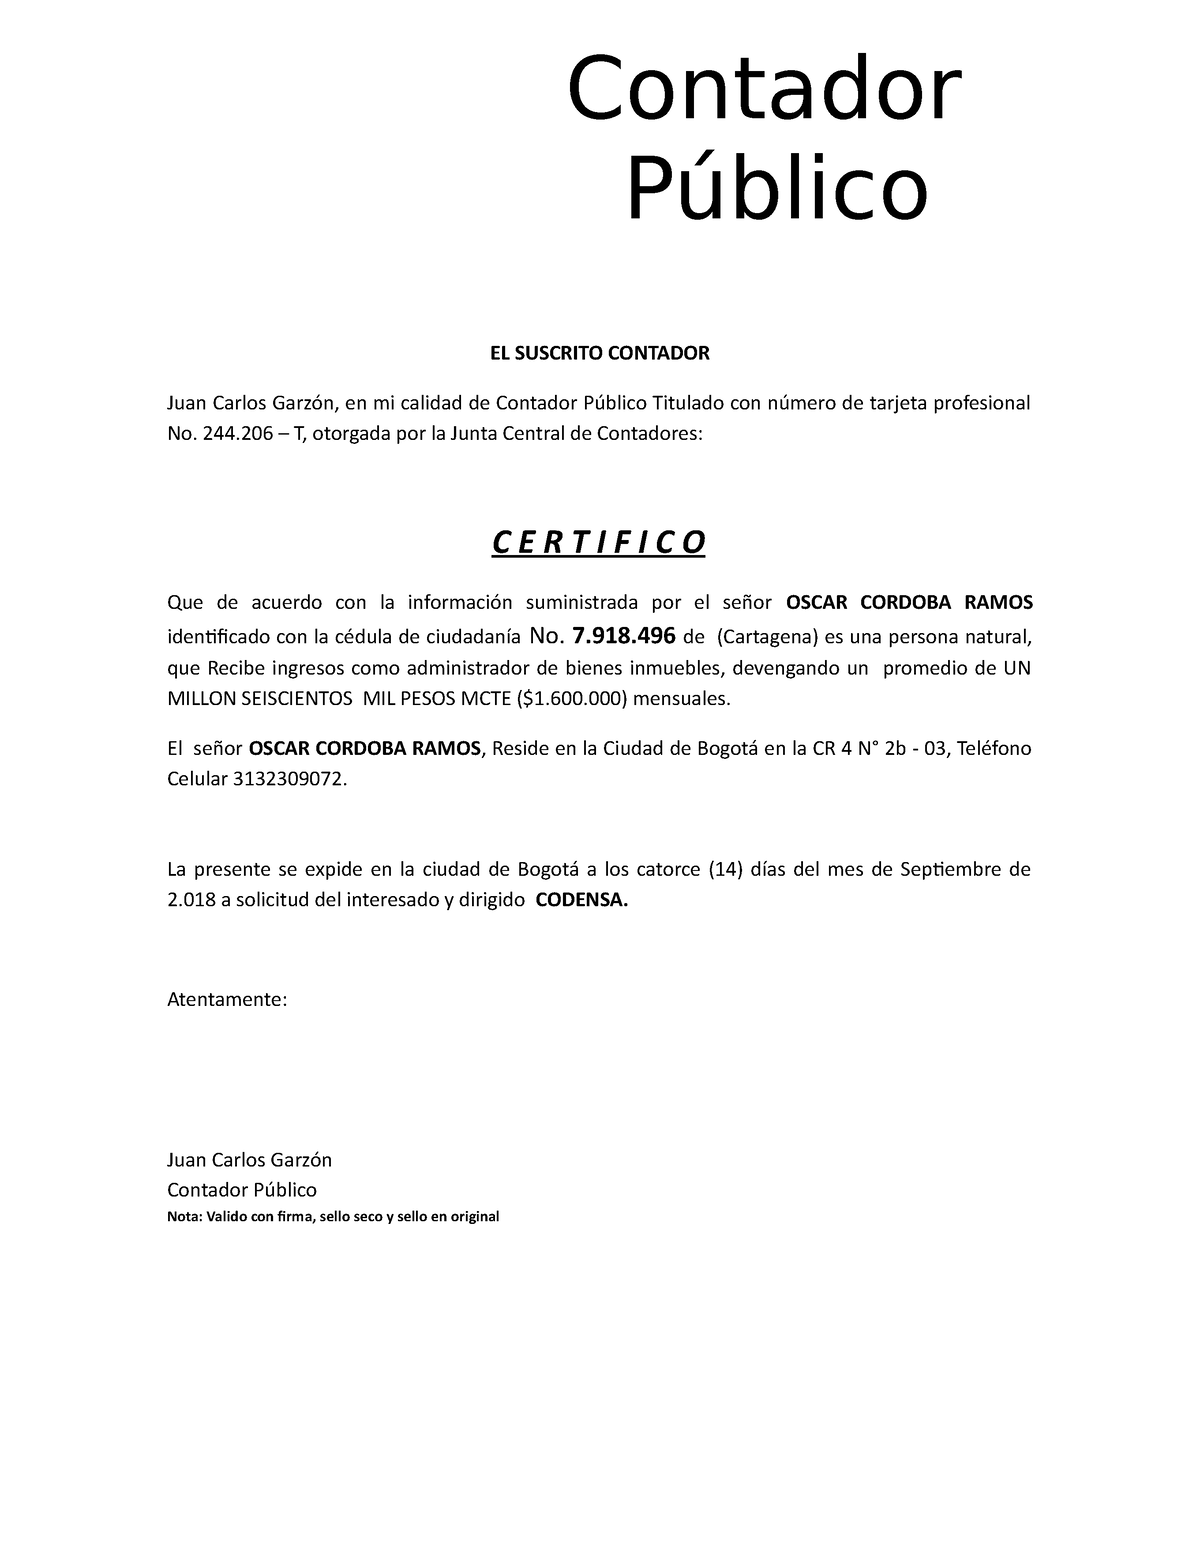 Certificado De Ingresos El Suscrito Contador Juan Carlos Garzón En